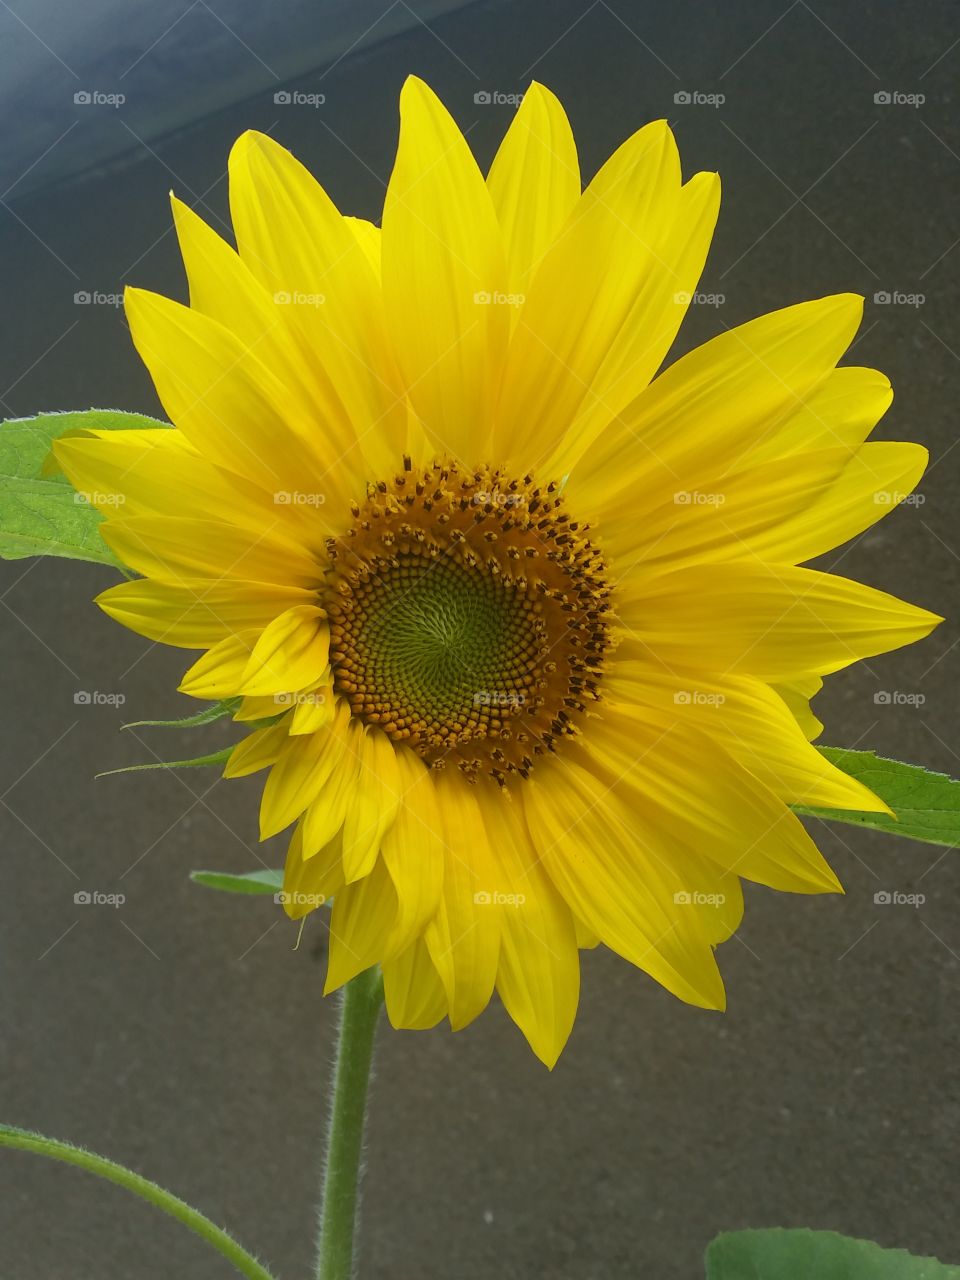 Sunflower in full bloom!